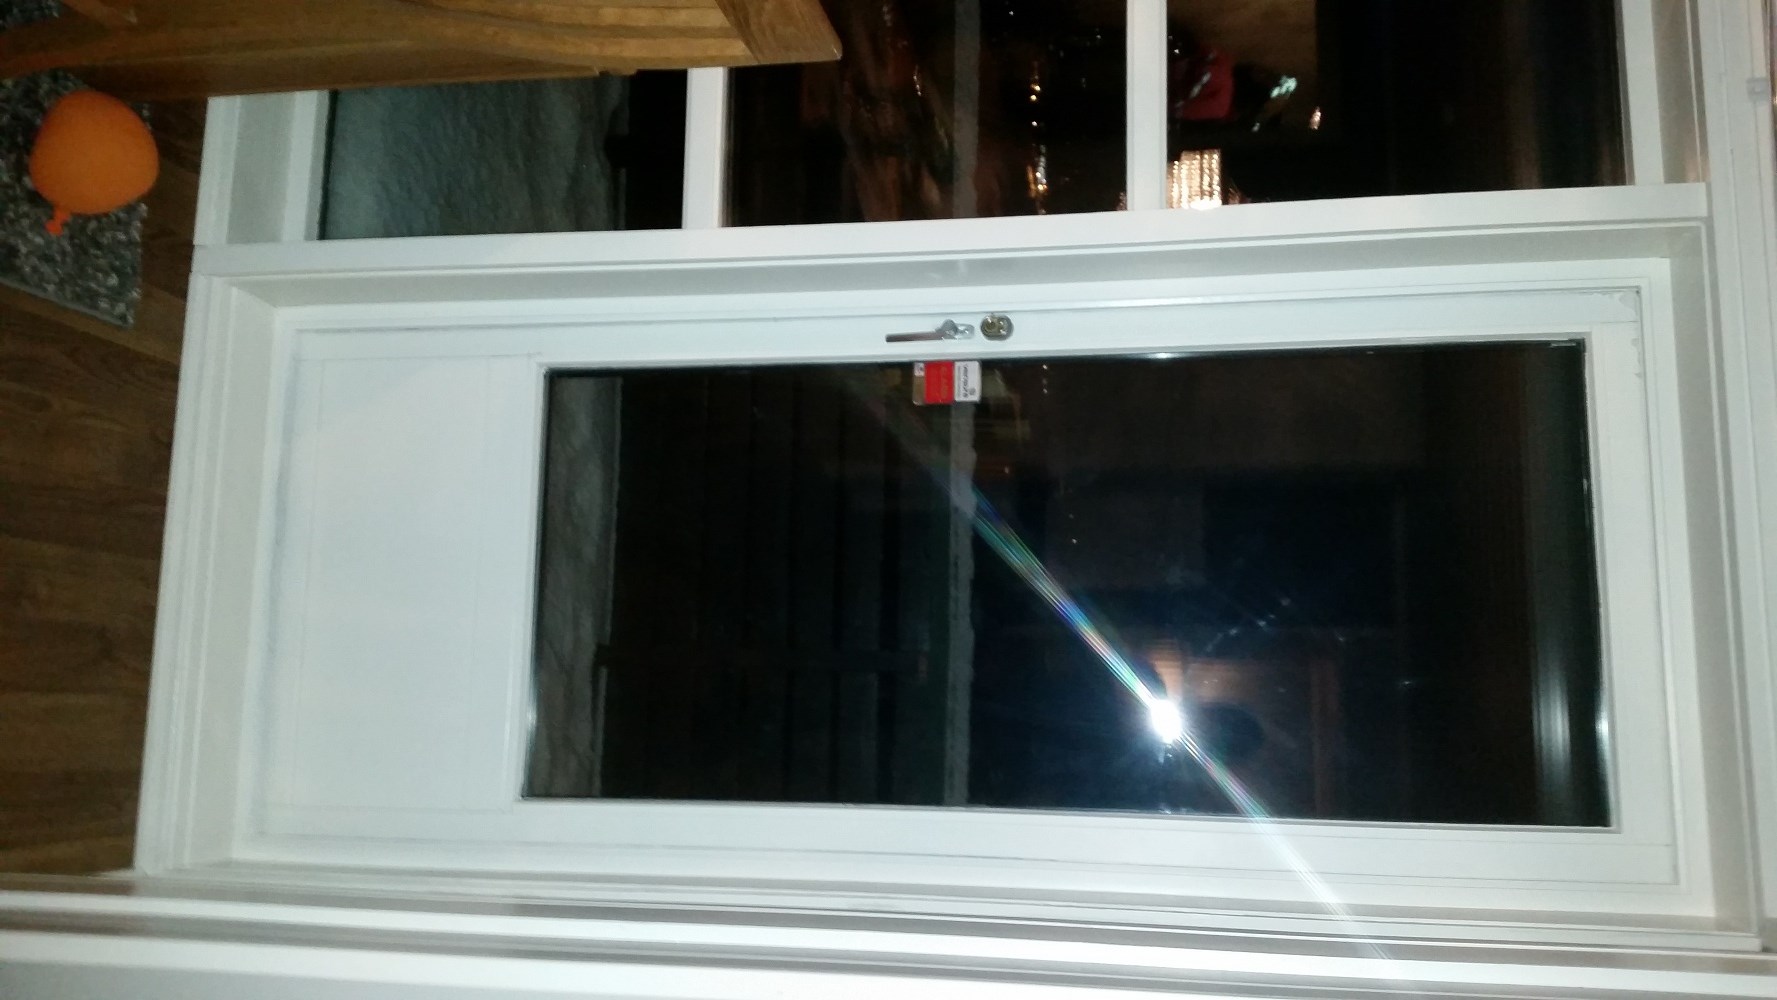 Trekk fra verandadør og vinduer i hus fra 1984 - forslag til forbedring - 2015-01-13 17.02.35.jpg - SteinarAngel